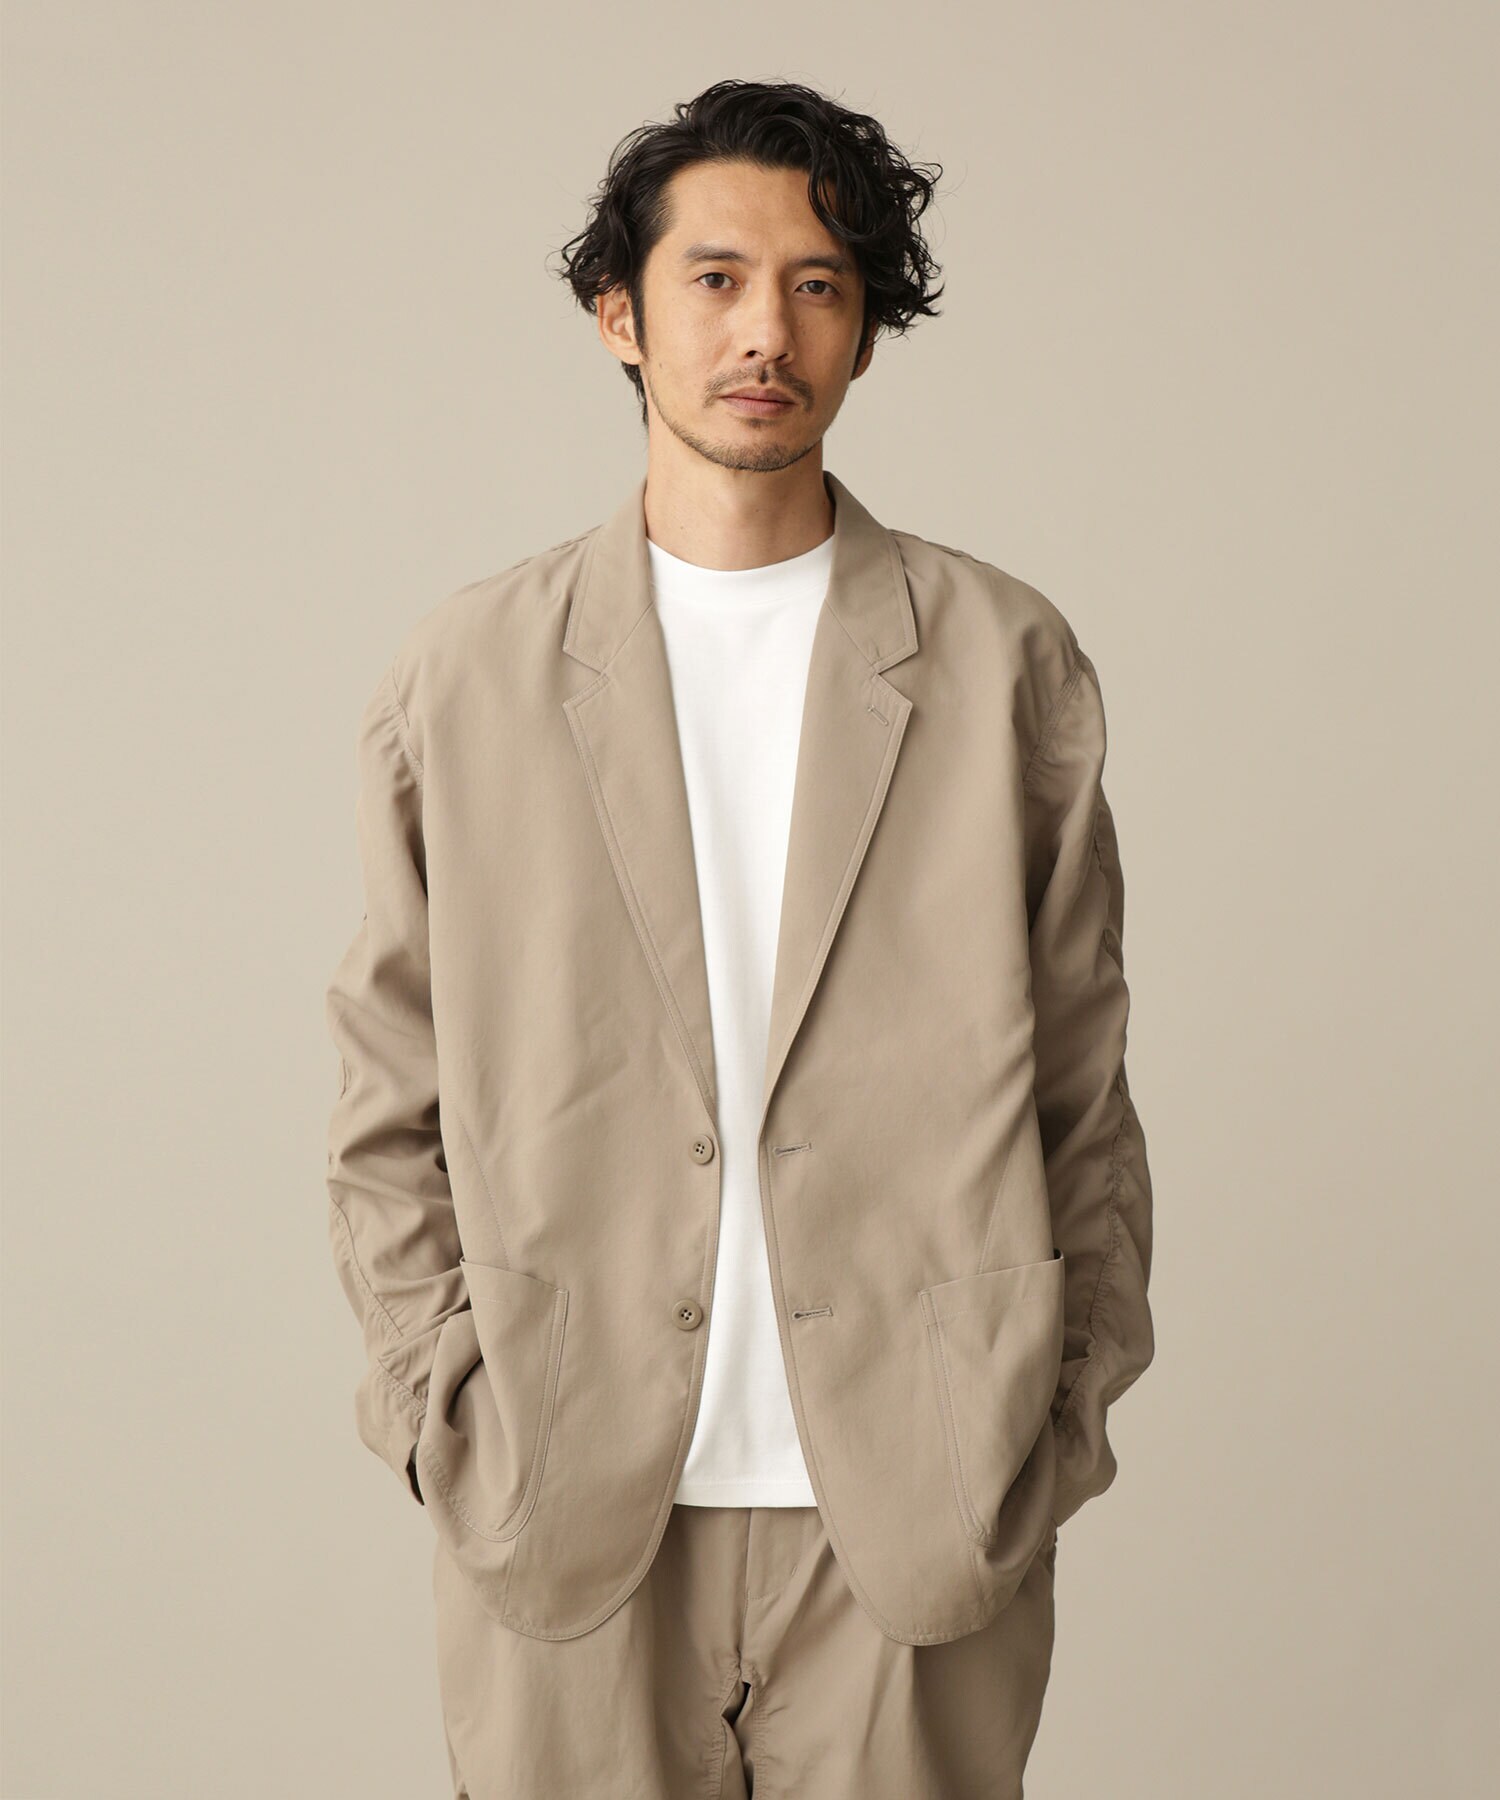 パーソナルカラー別｜スプリング(イエベ春)タイプに似合うジャケット